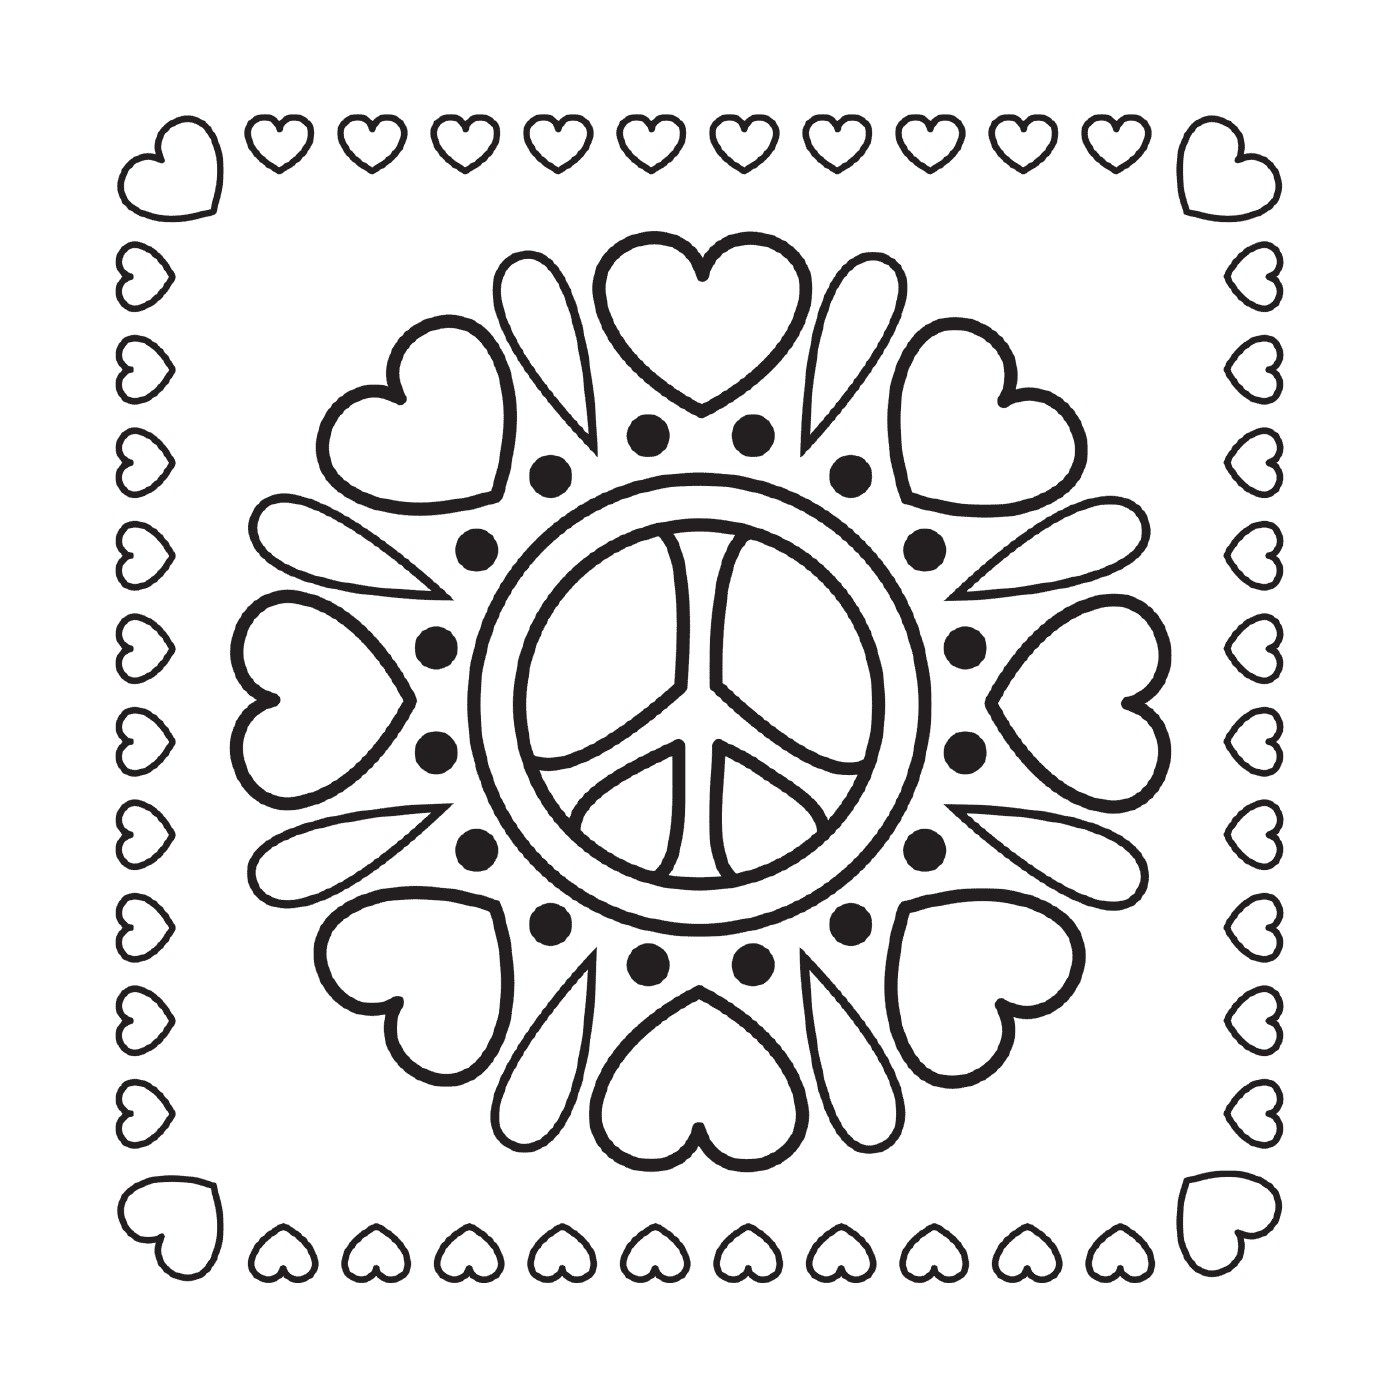  Mandala de paz com corações 